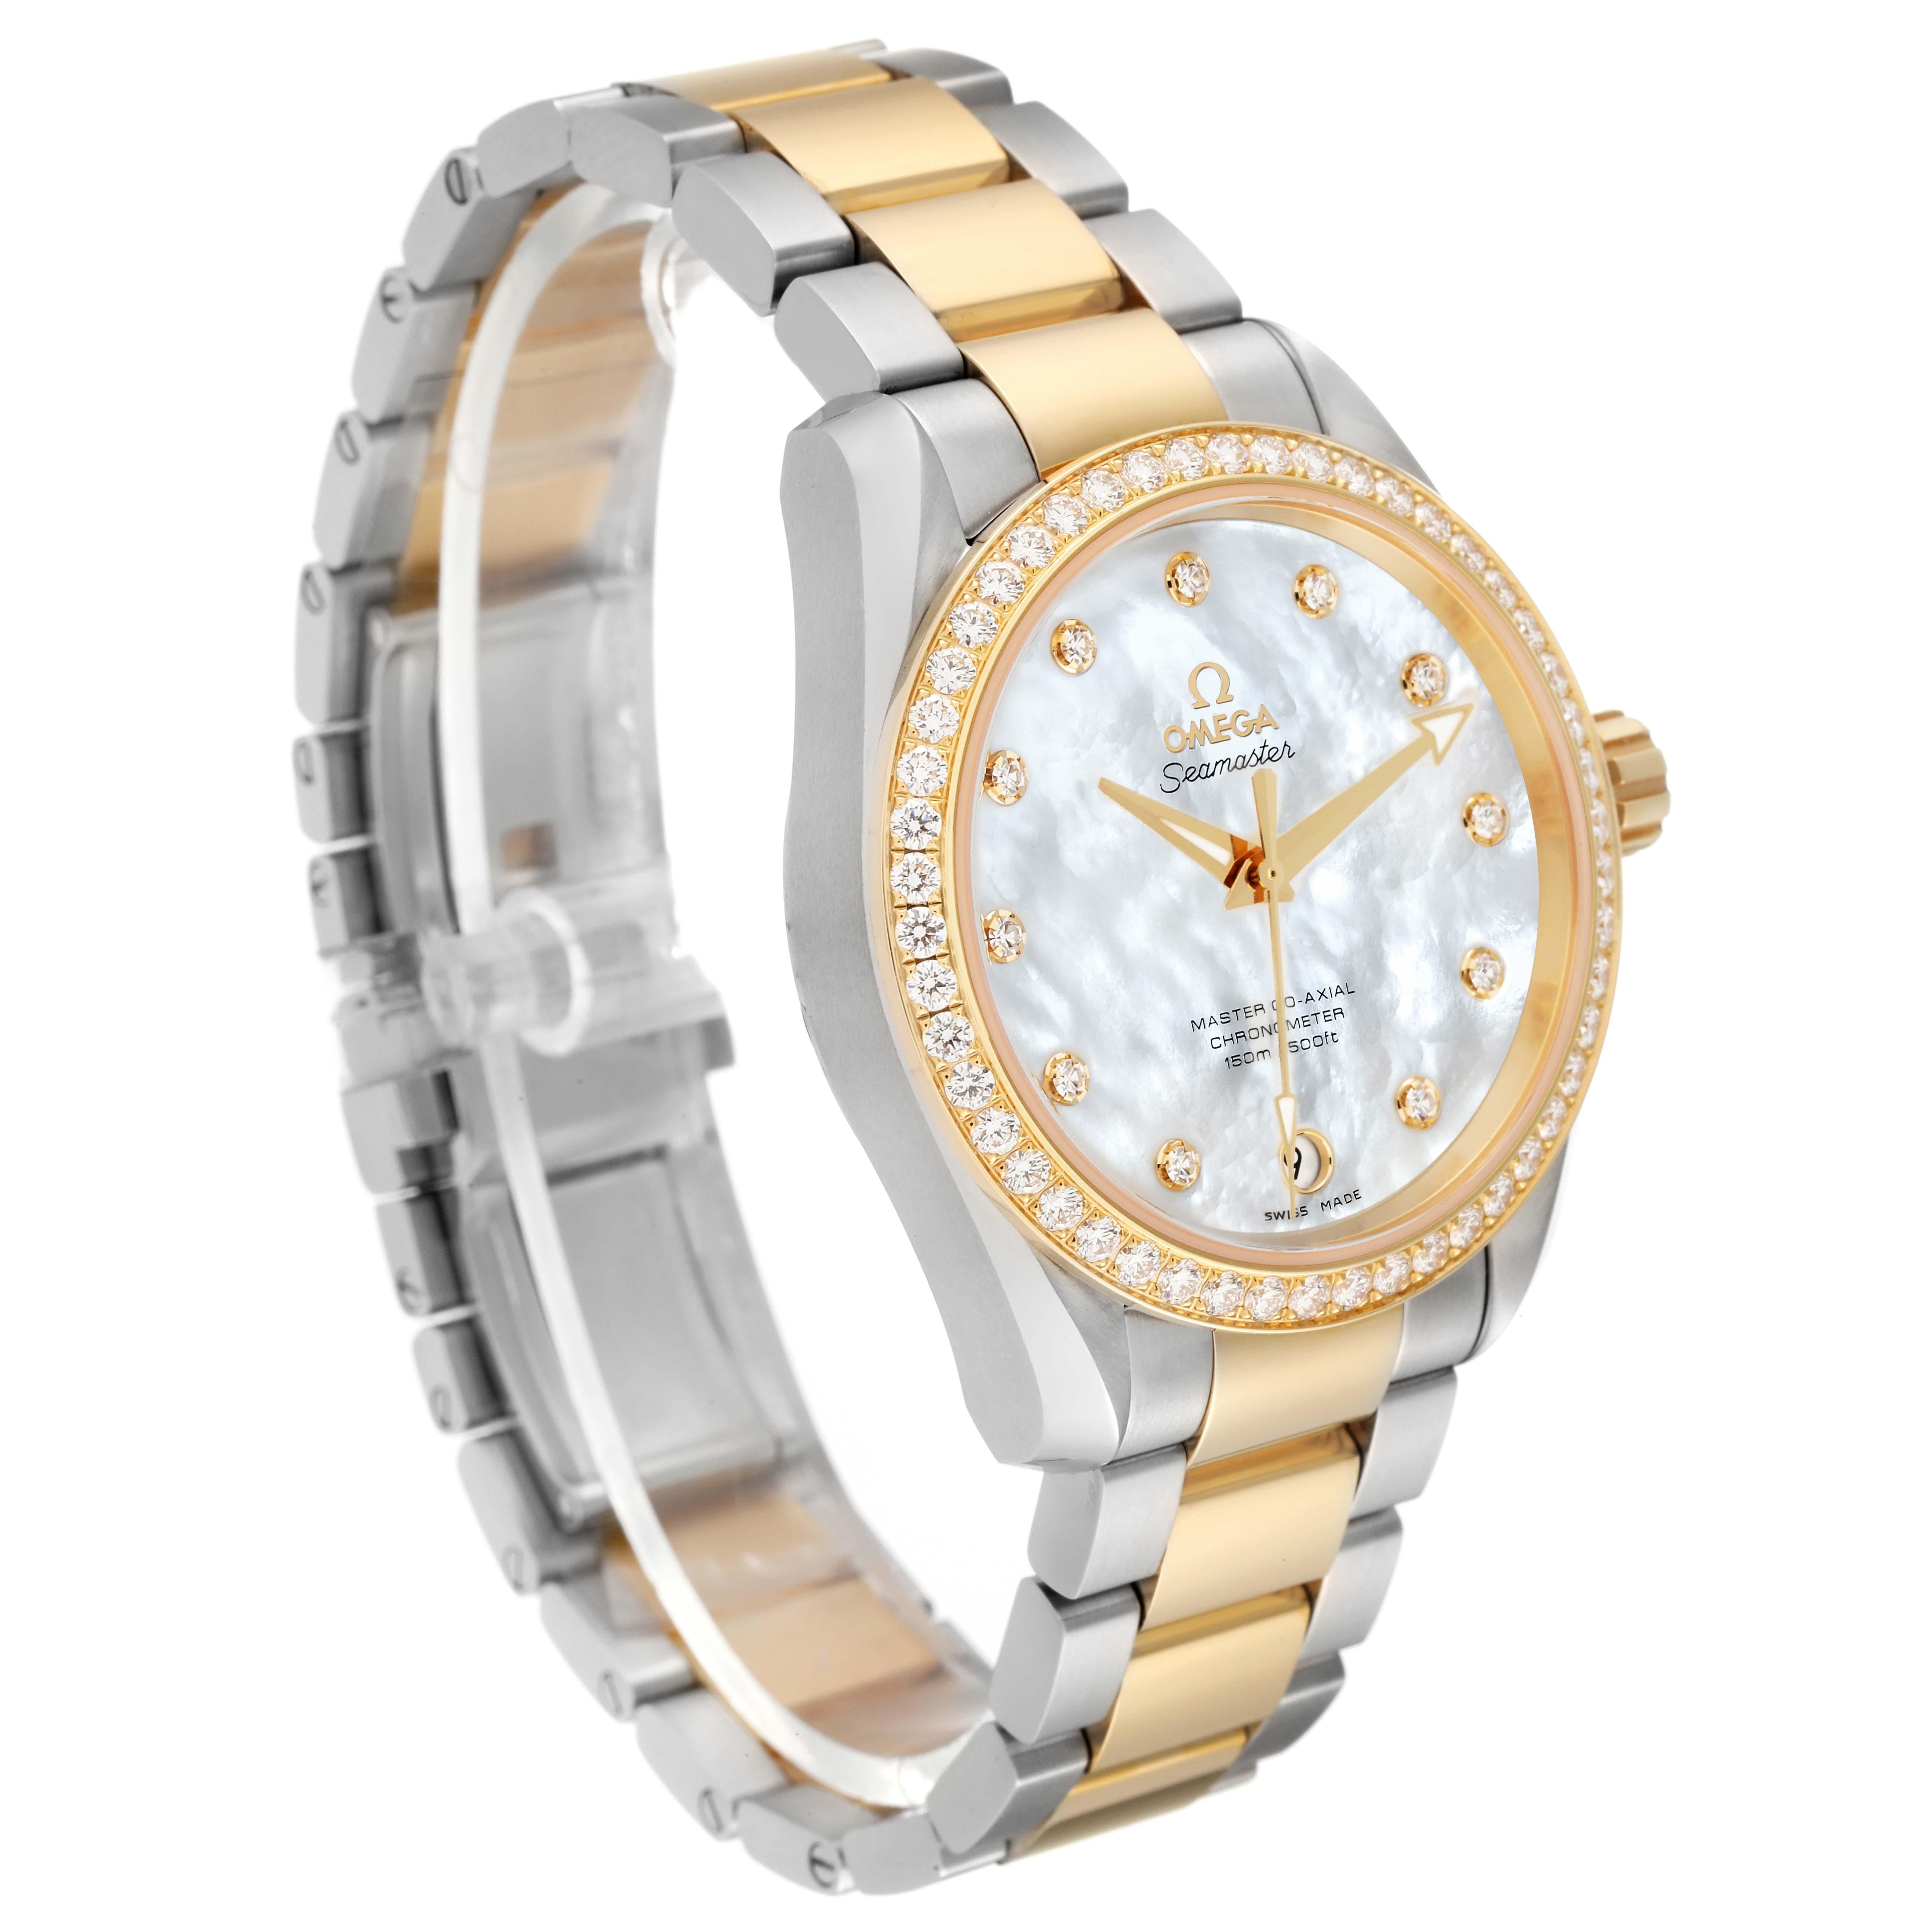 Omega Aqua Terra Steel Yellow Gold Diamond Watch 231.25.39.21.55.002 Unworn In Excellent Condition In Atlanta, GA